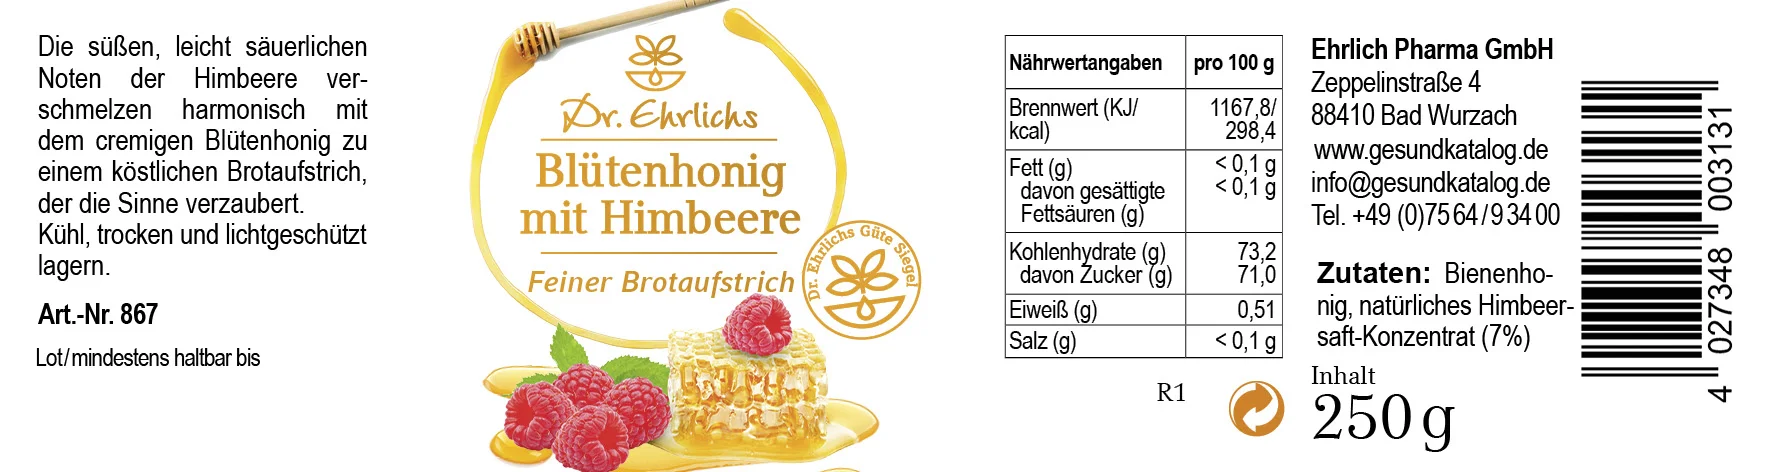 Etikett von Dr. Ehrlichs Himbeere in Honig - Blütenhonig mit Himbeere